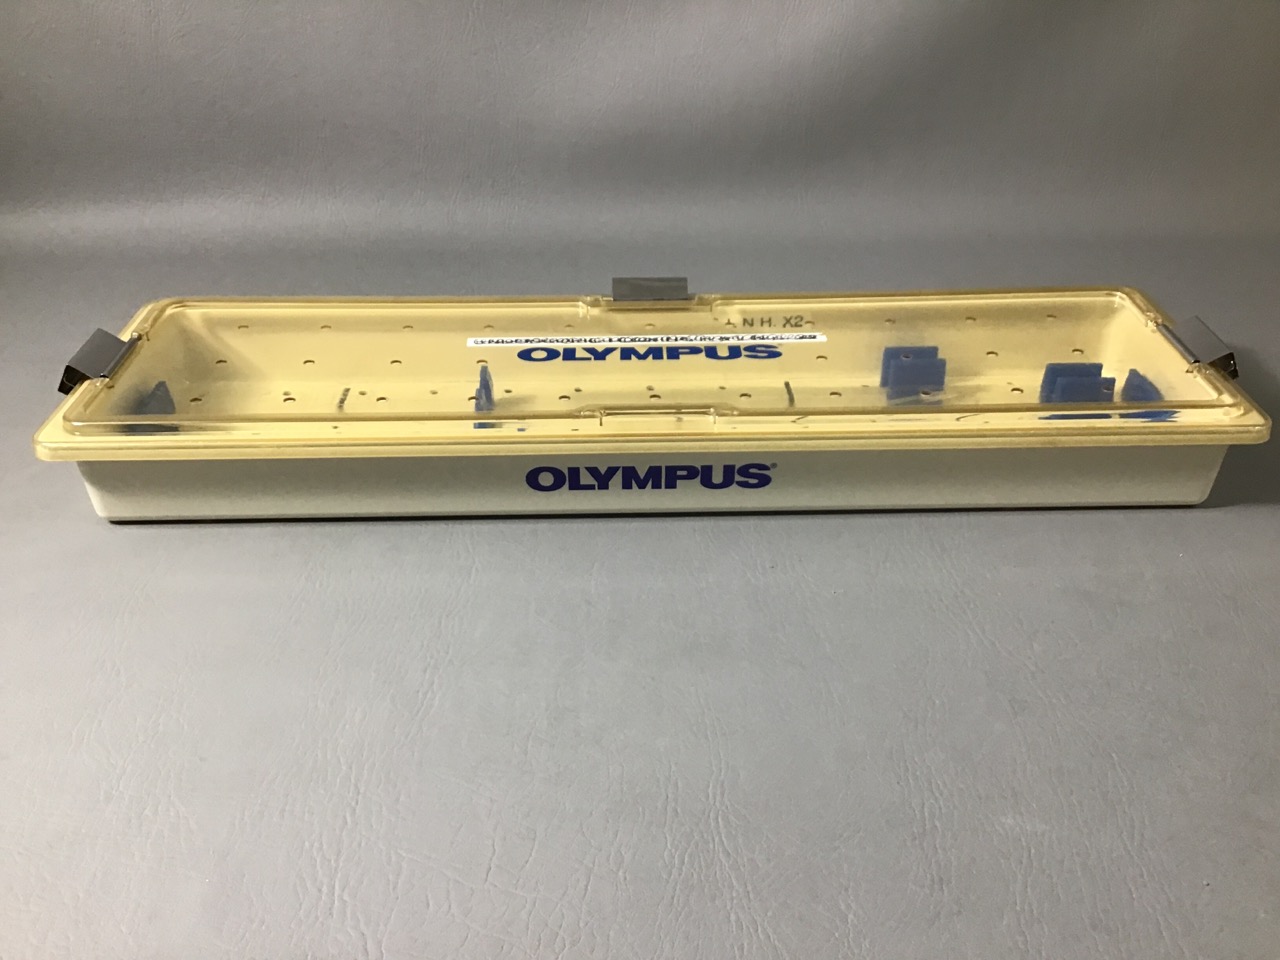 Olympus Sterilization Tray - Plastic - NWS Medical Scientific